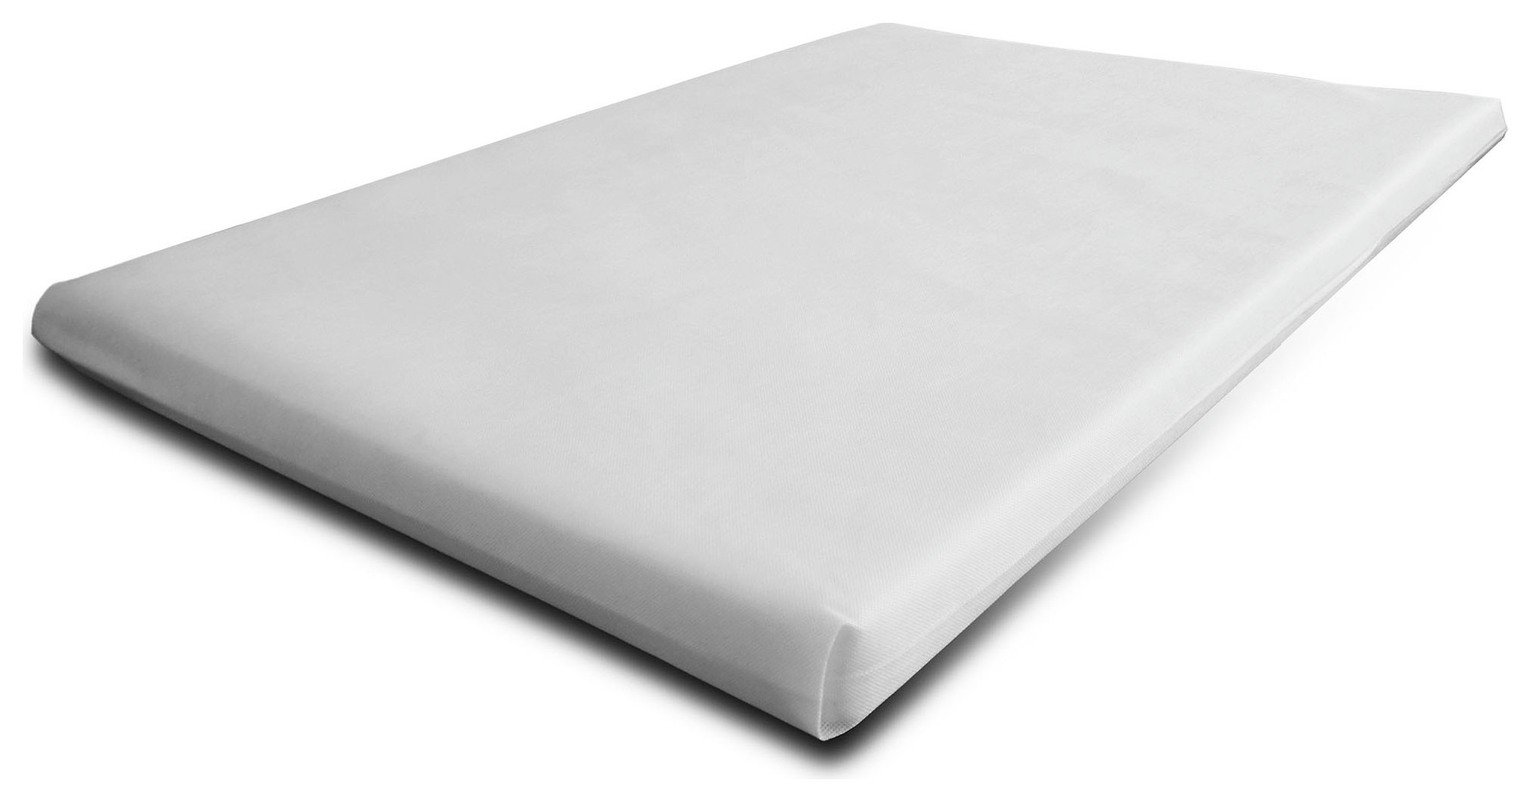 cuggl cot bed mattress